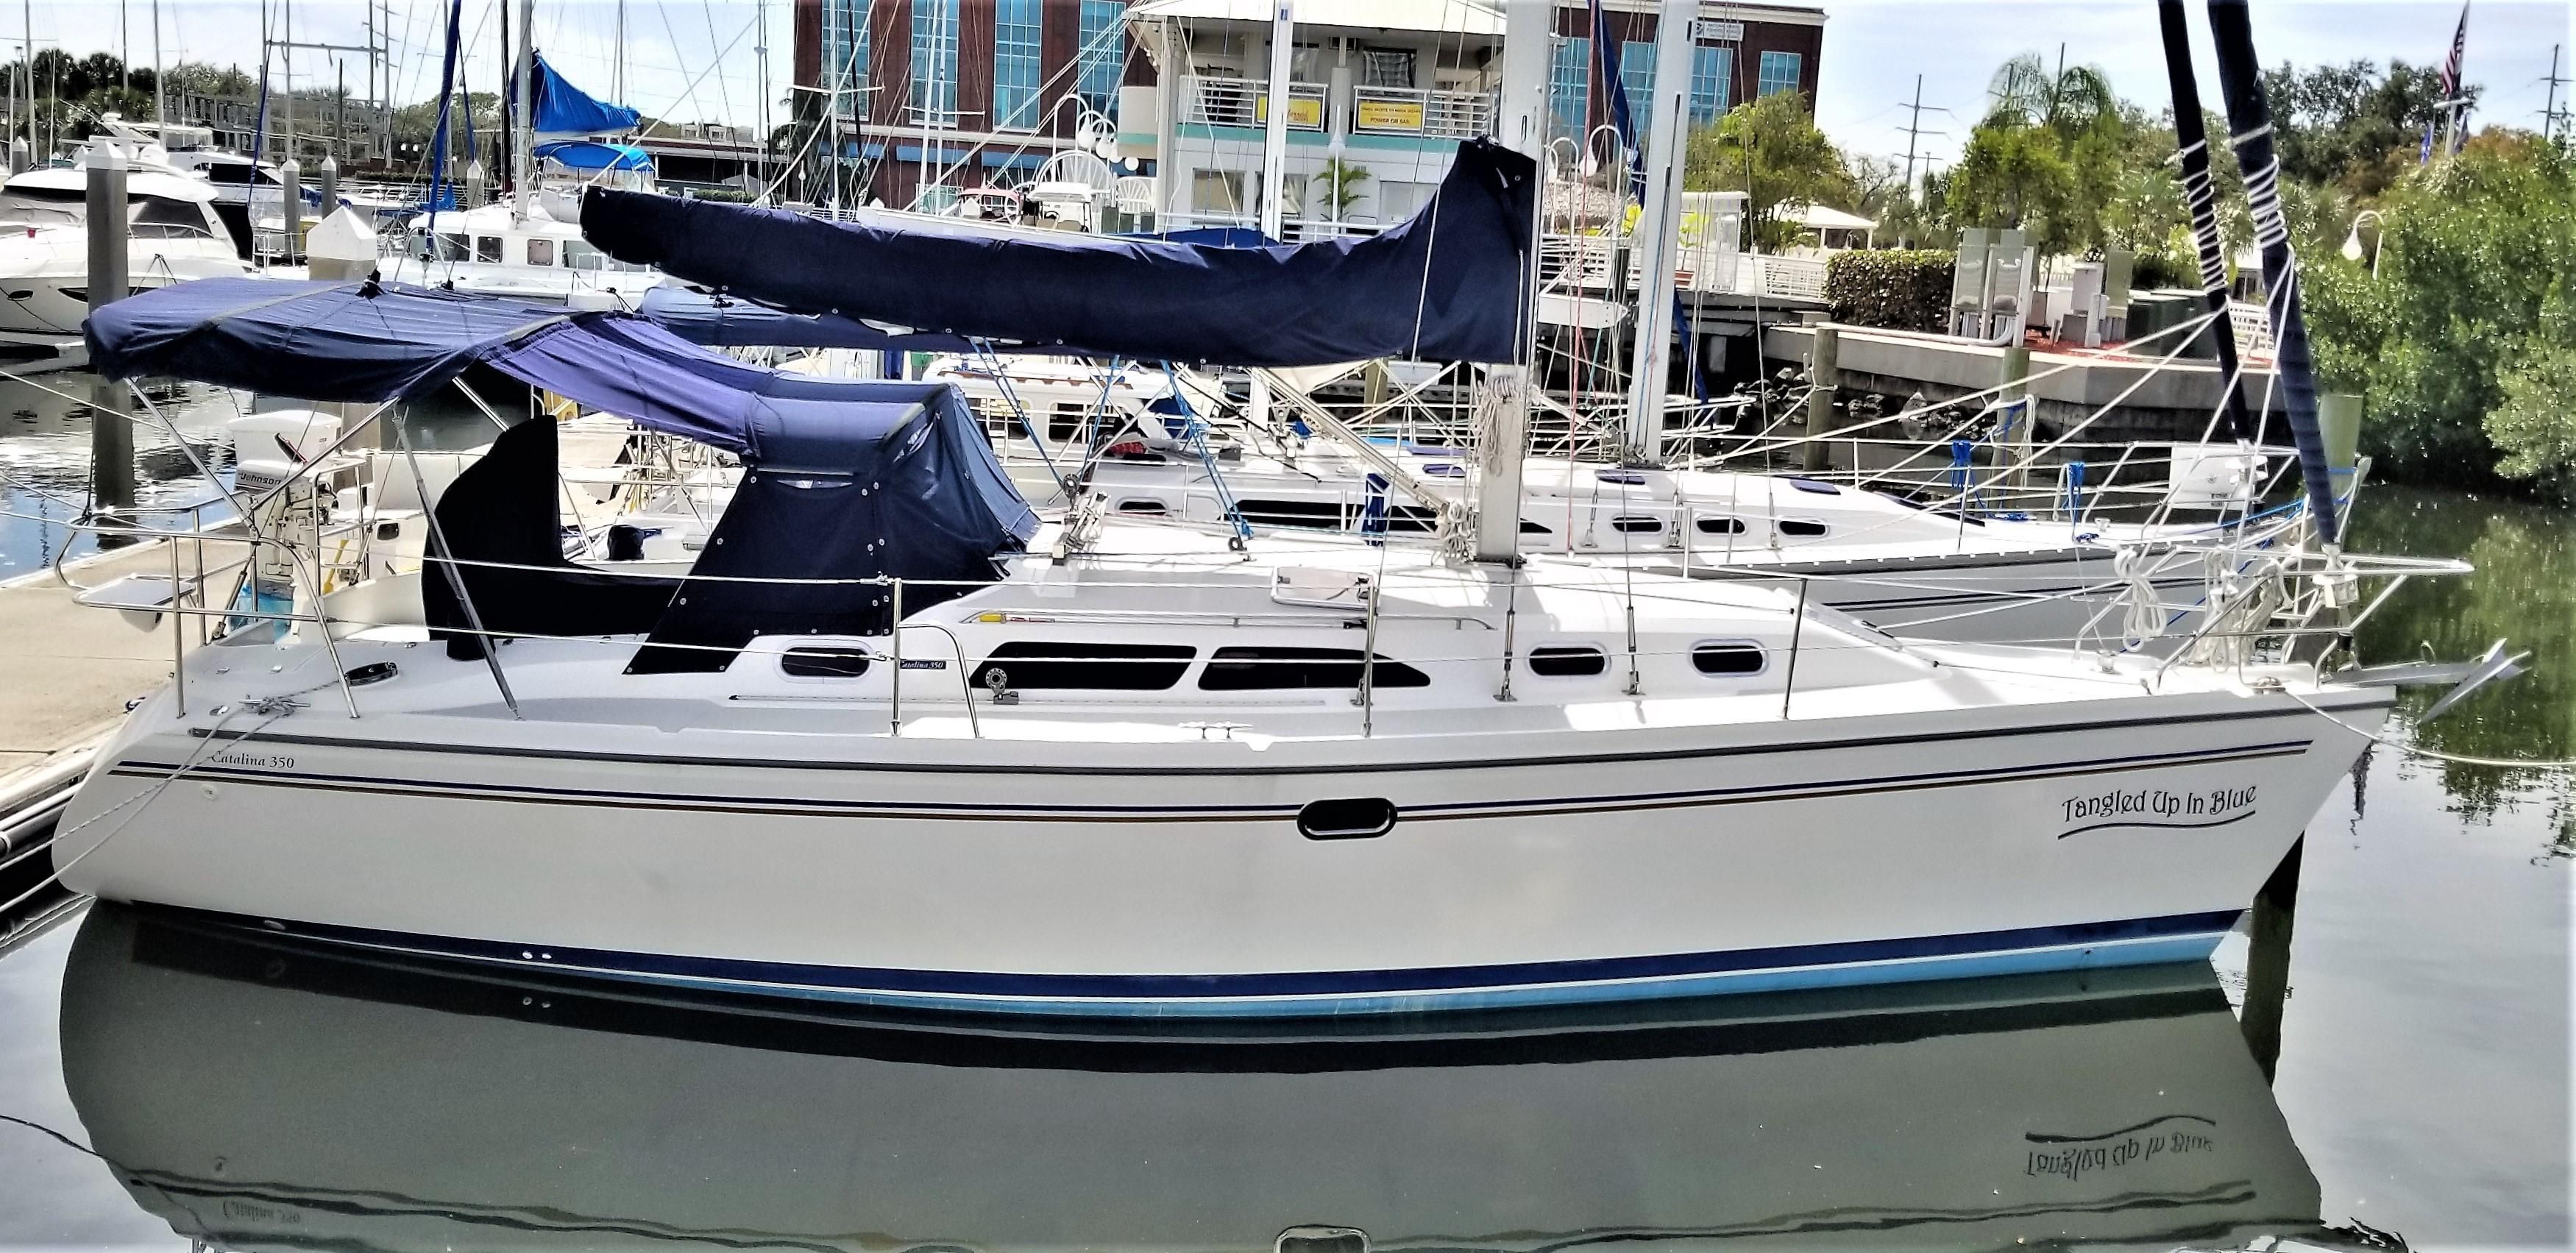 35 foot catalina sailboat